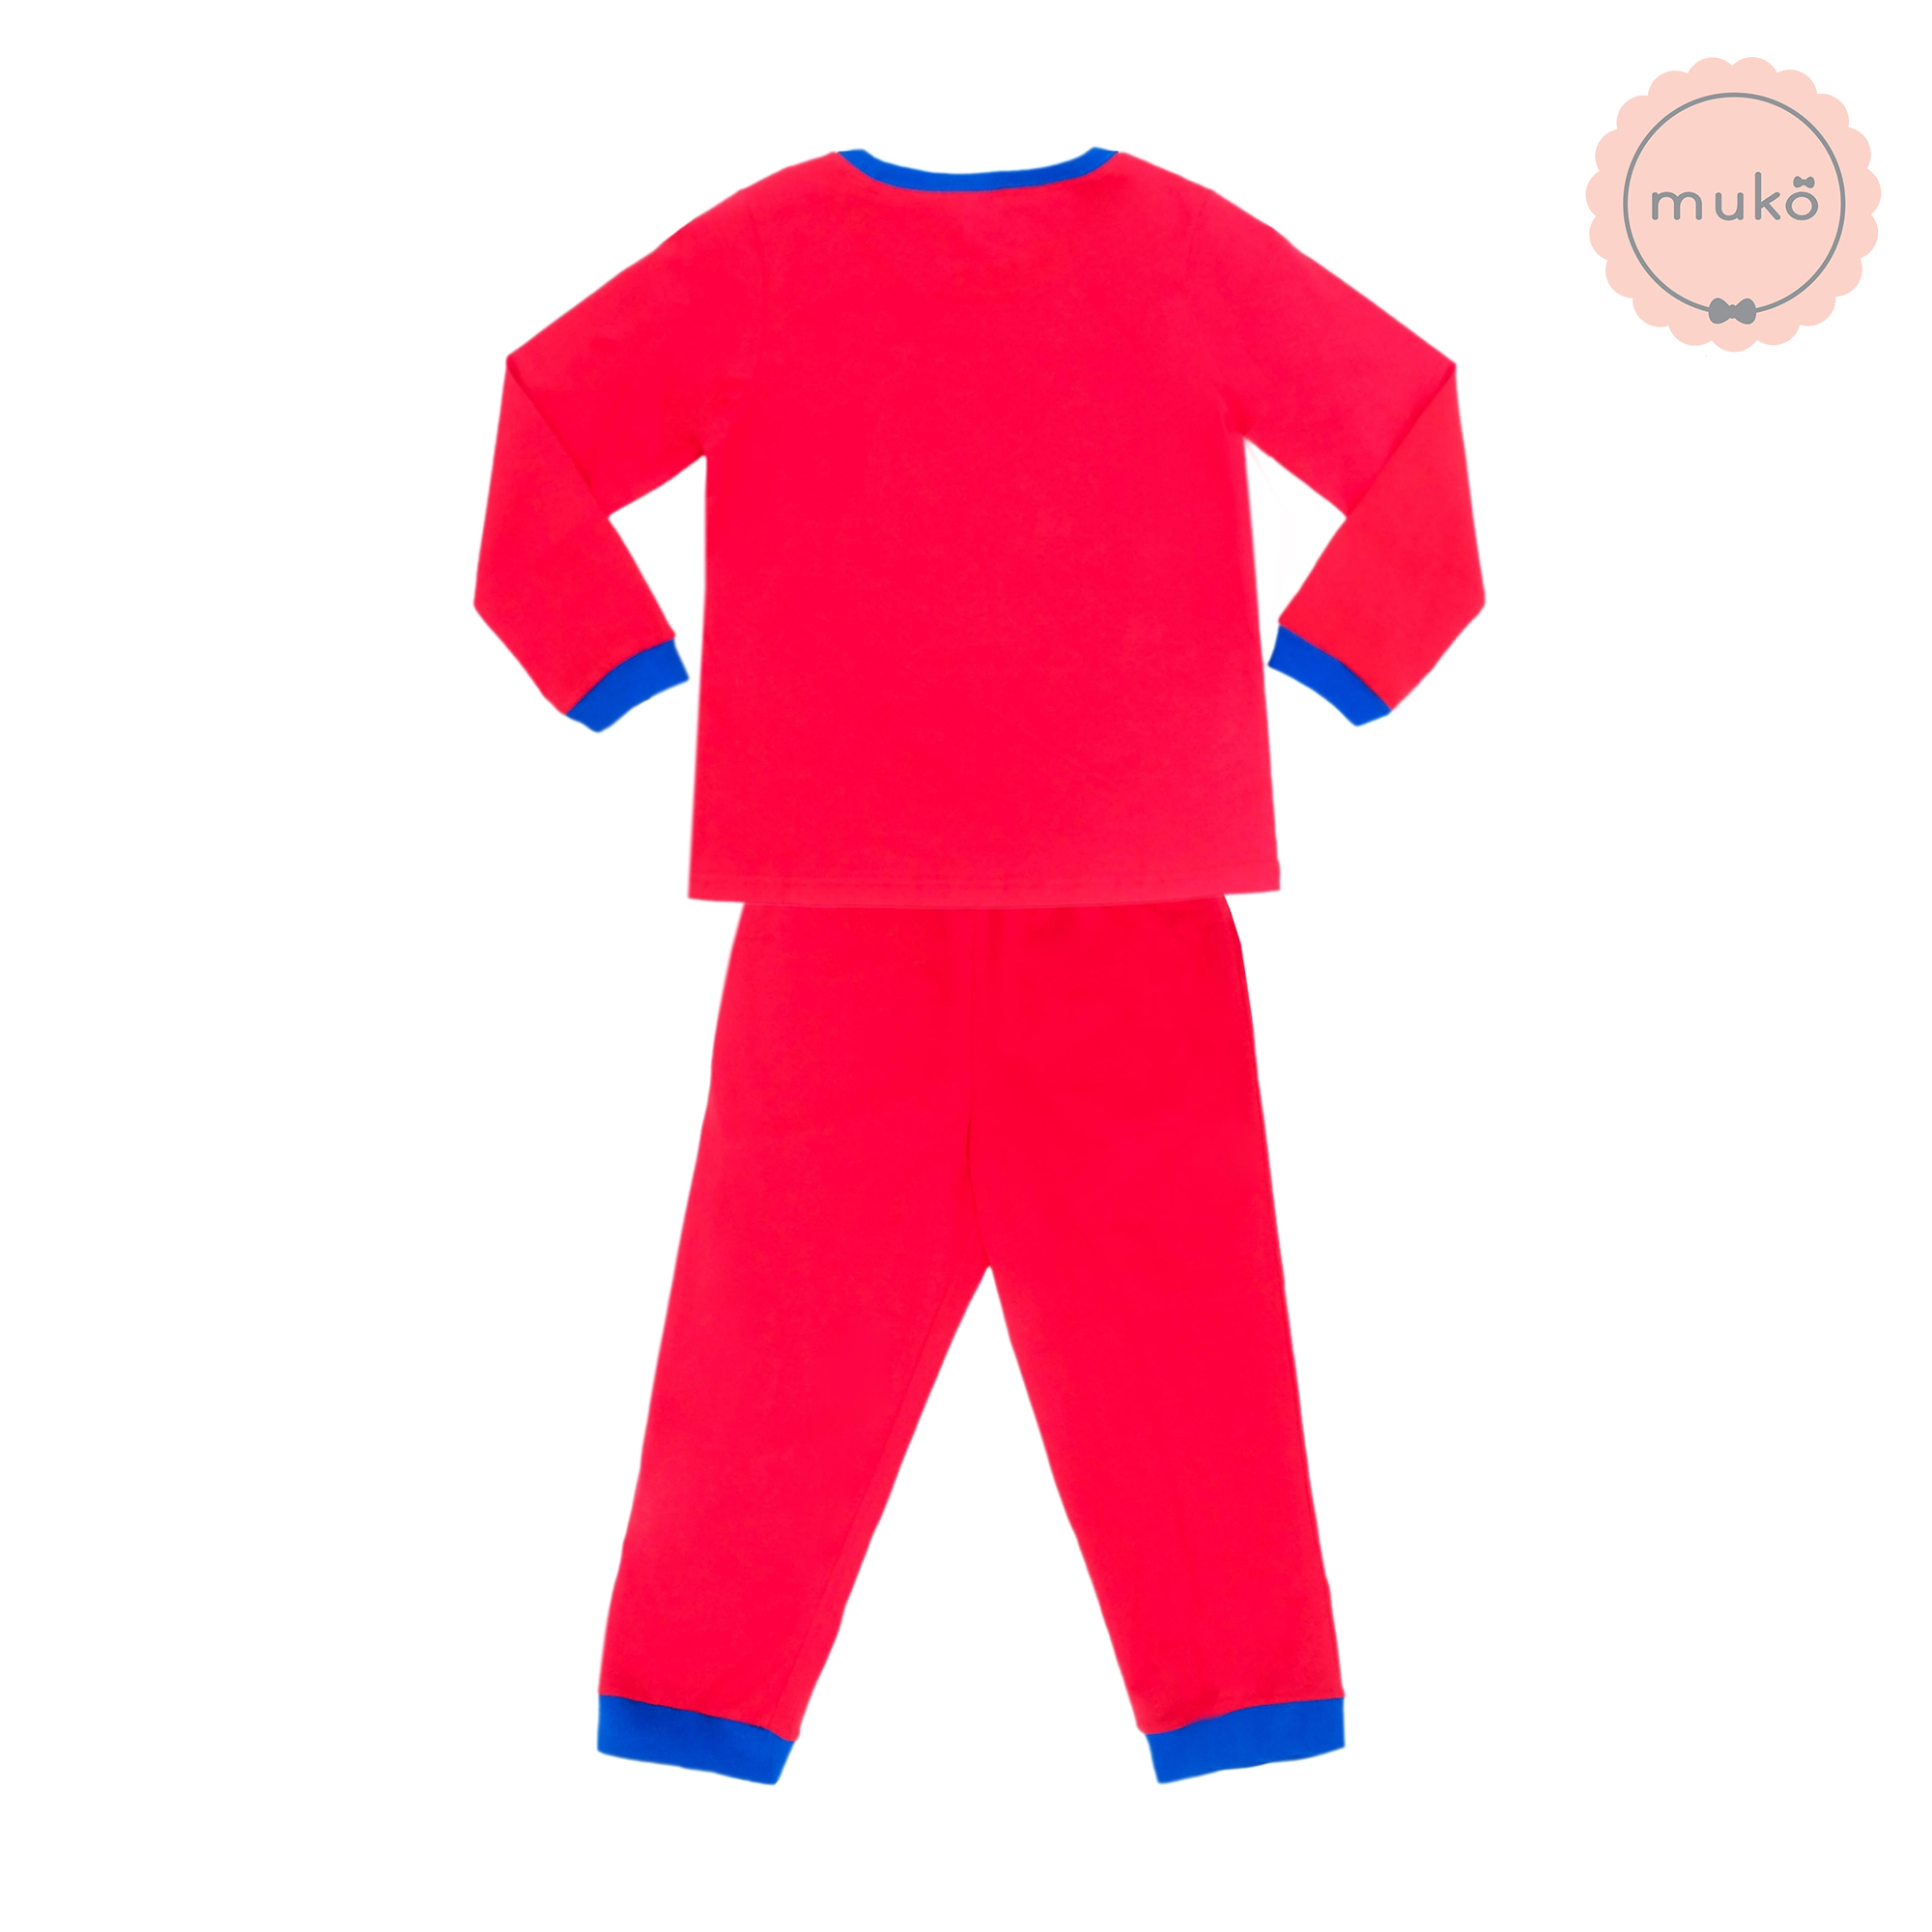 ชุดเด็ก 5-6 ขวบ แขนยาว-ขายาว (Size M) DPC127-09-XL-Red M ลายเจ้าหญิงสโนไวท์ Snow white สีแดง (แดงทั้งชุดขอบน้ำเงิน)